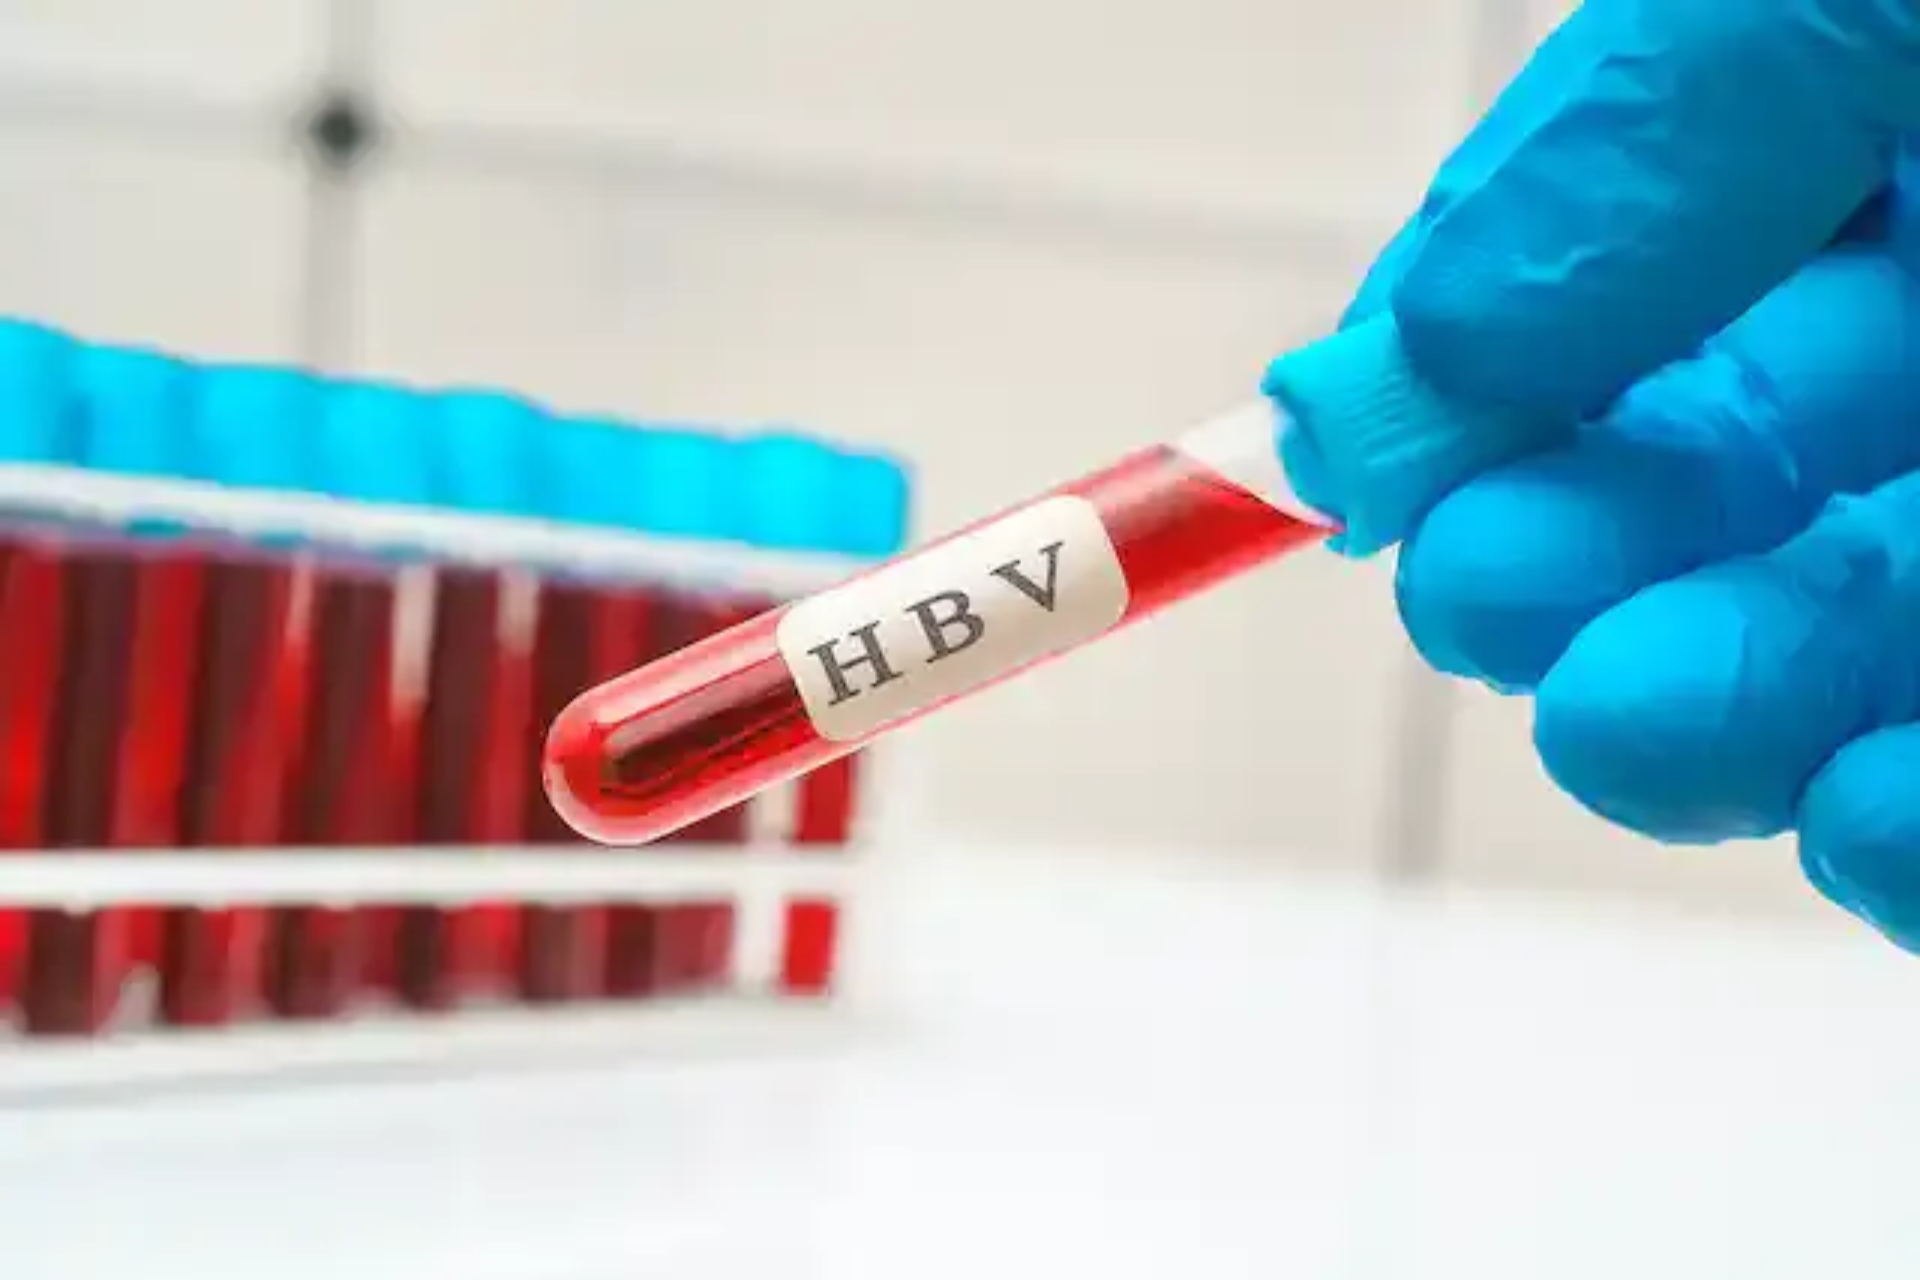 Hepatitis B early detection